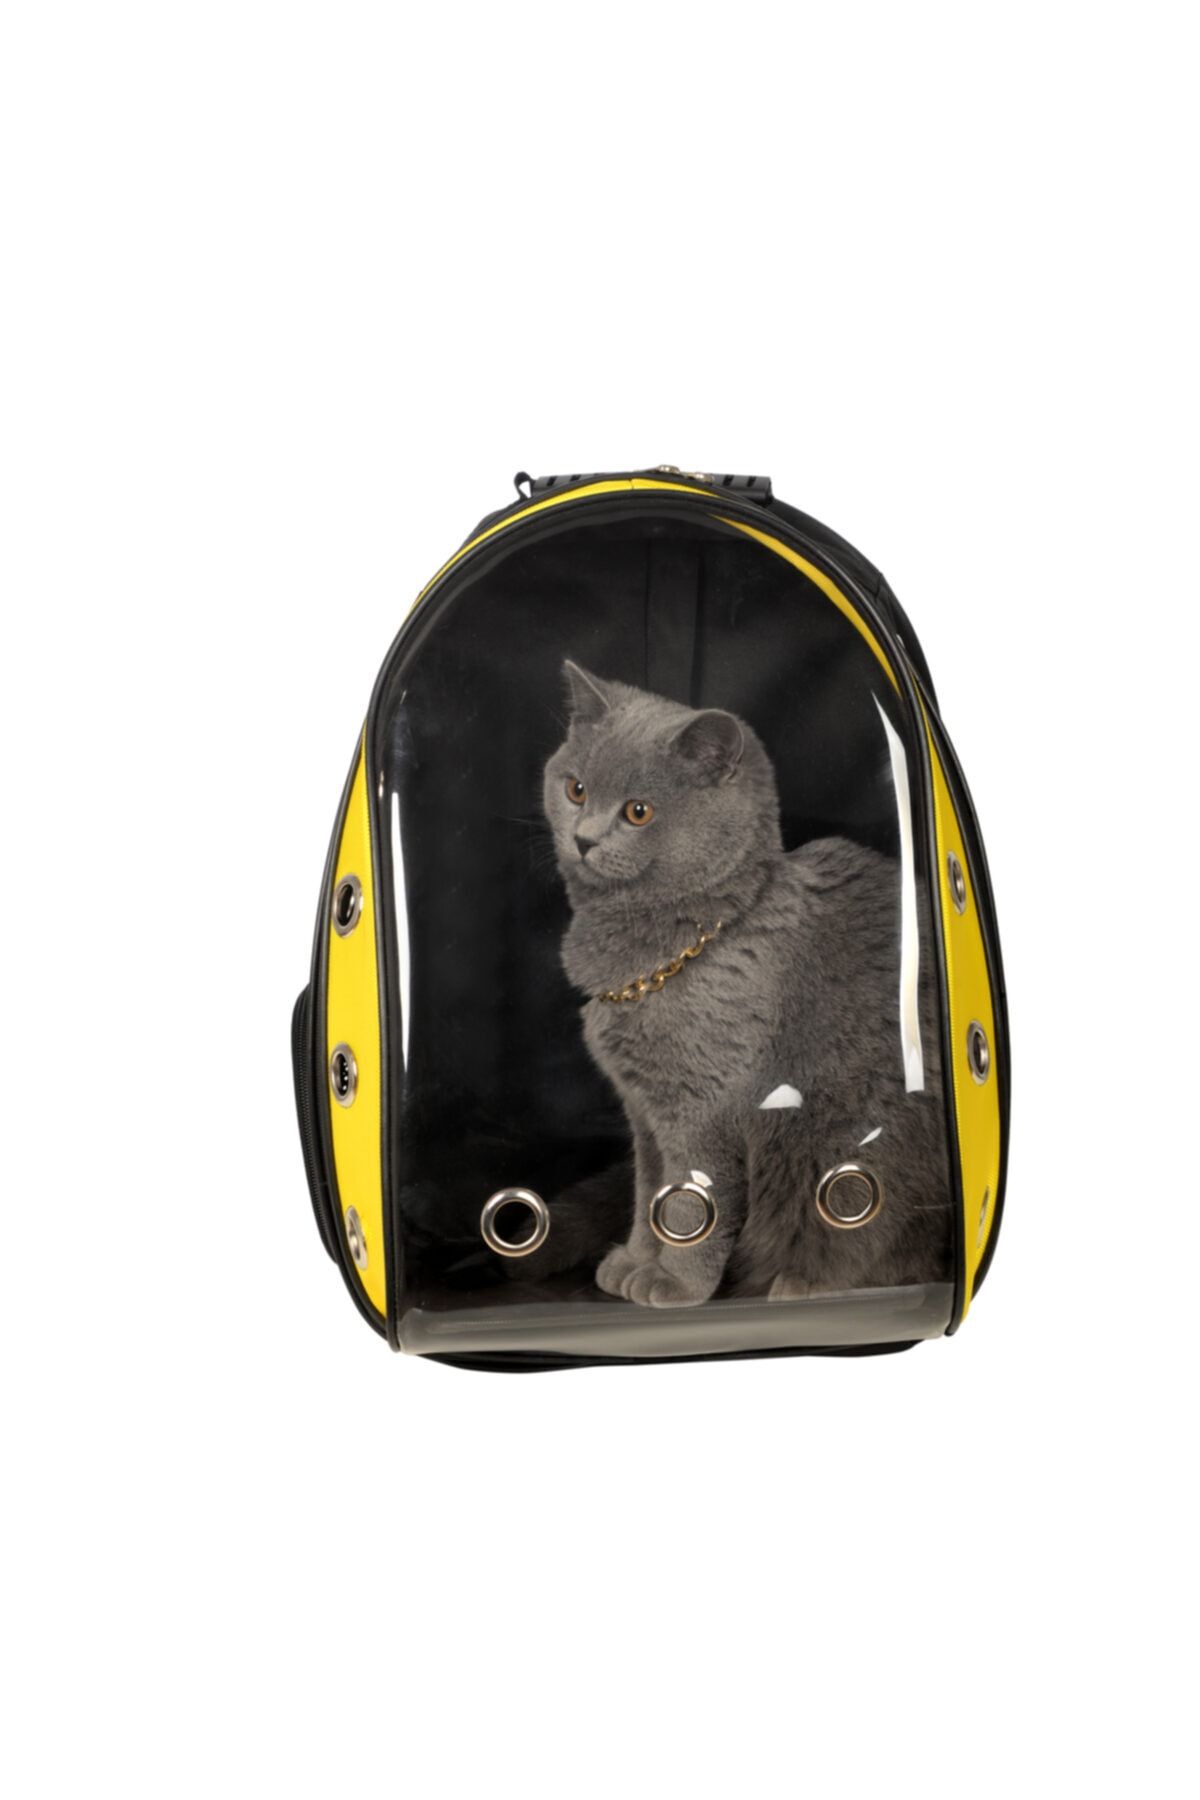 Tropheus çanta Astronot Kırılmaz Şeffaf Kedi Köpek Taşıma Çantası 42 X 22 X 33 Cm Sarı